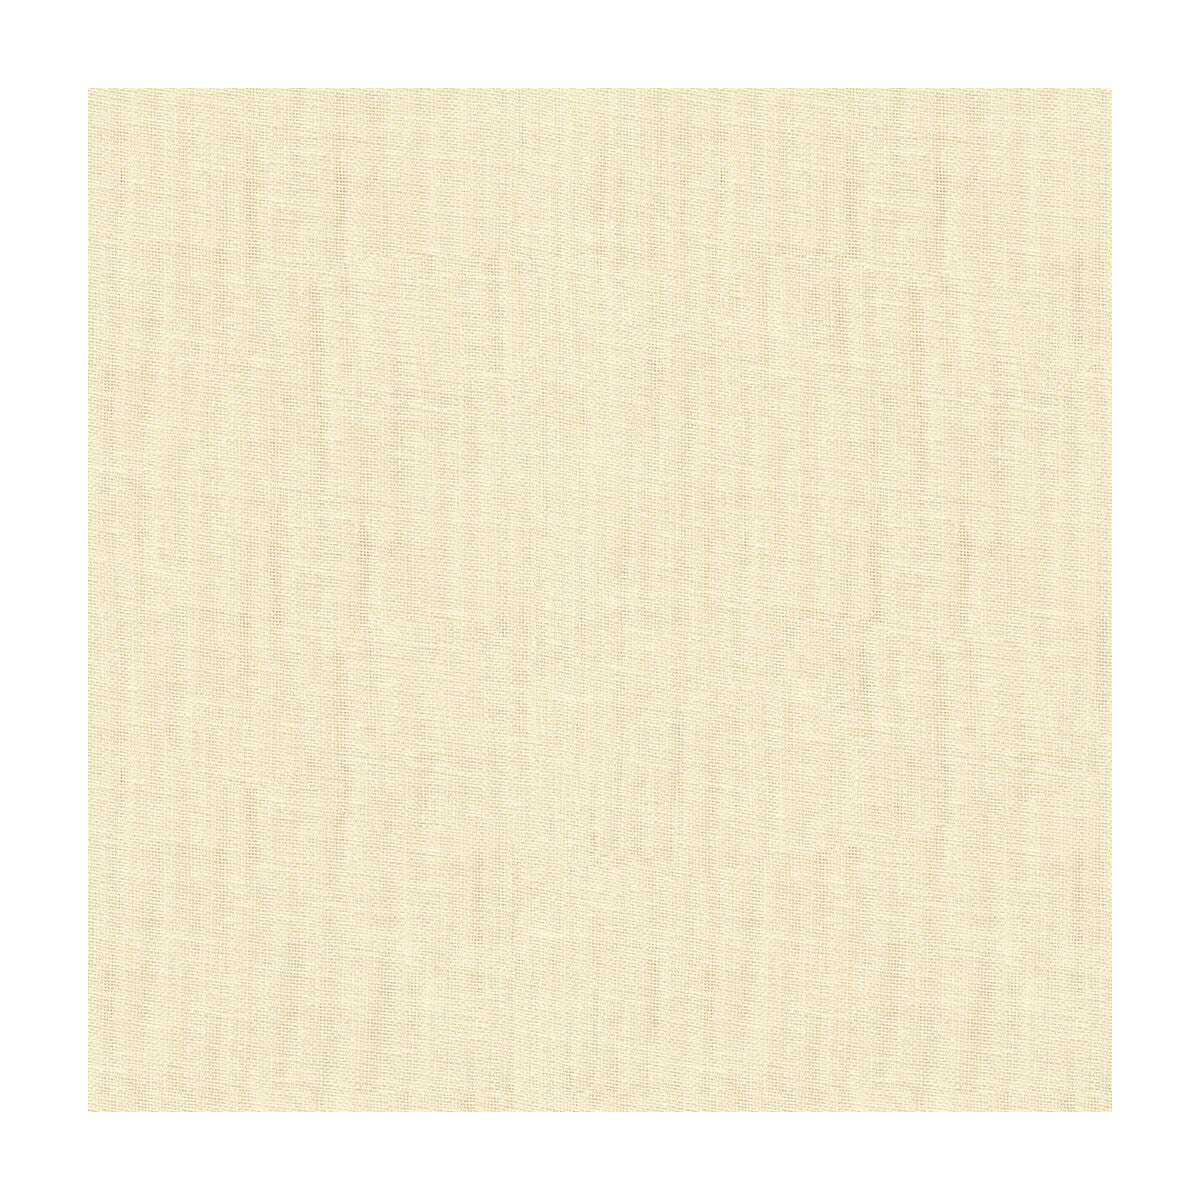 Kravet Basics fabric in 4112-1 color - pattern 4112.1.0 - by Kravet Basics